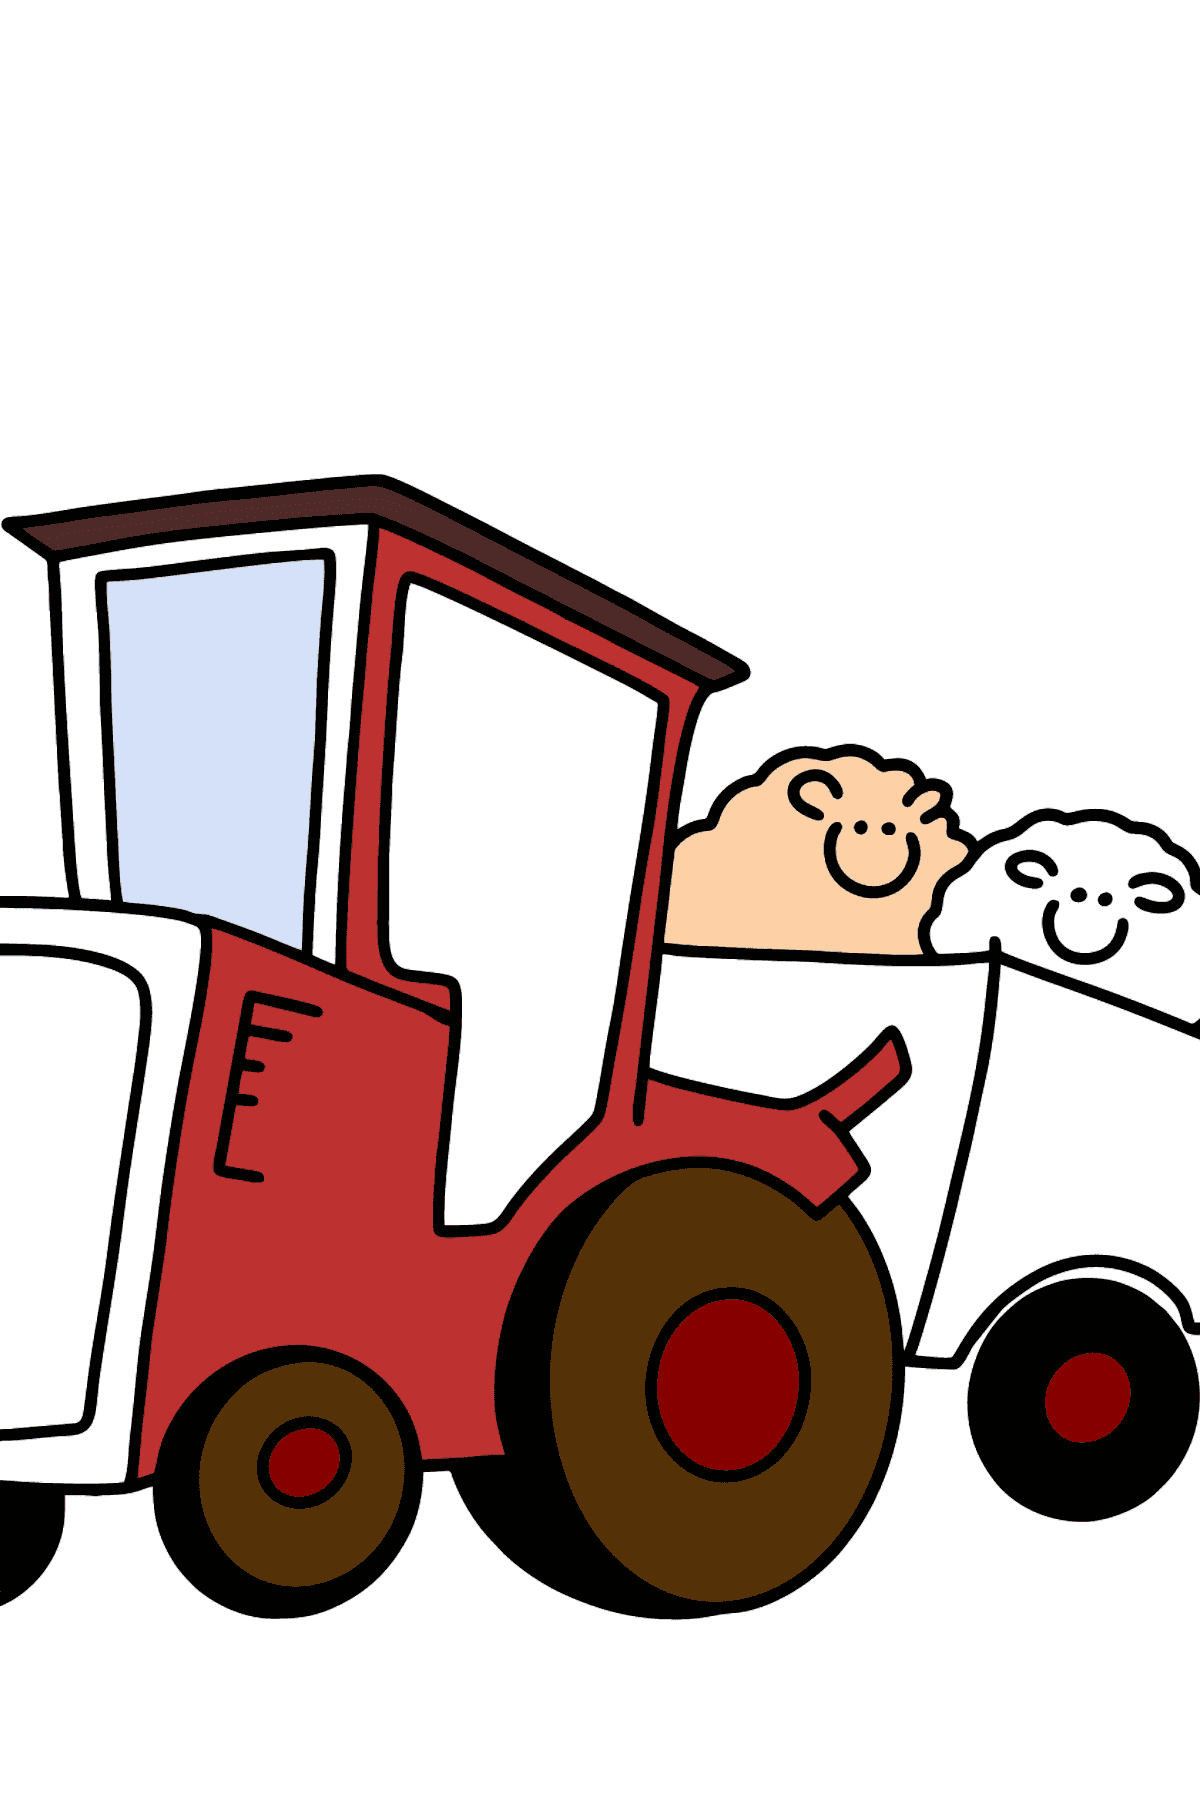 Desenho para colorir Tractor with Sheep Trailer - Imagens para Colorir para Crianças